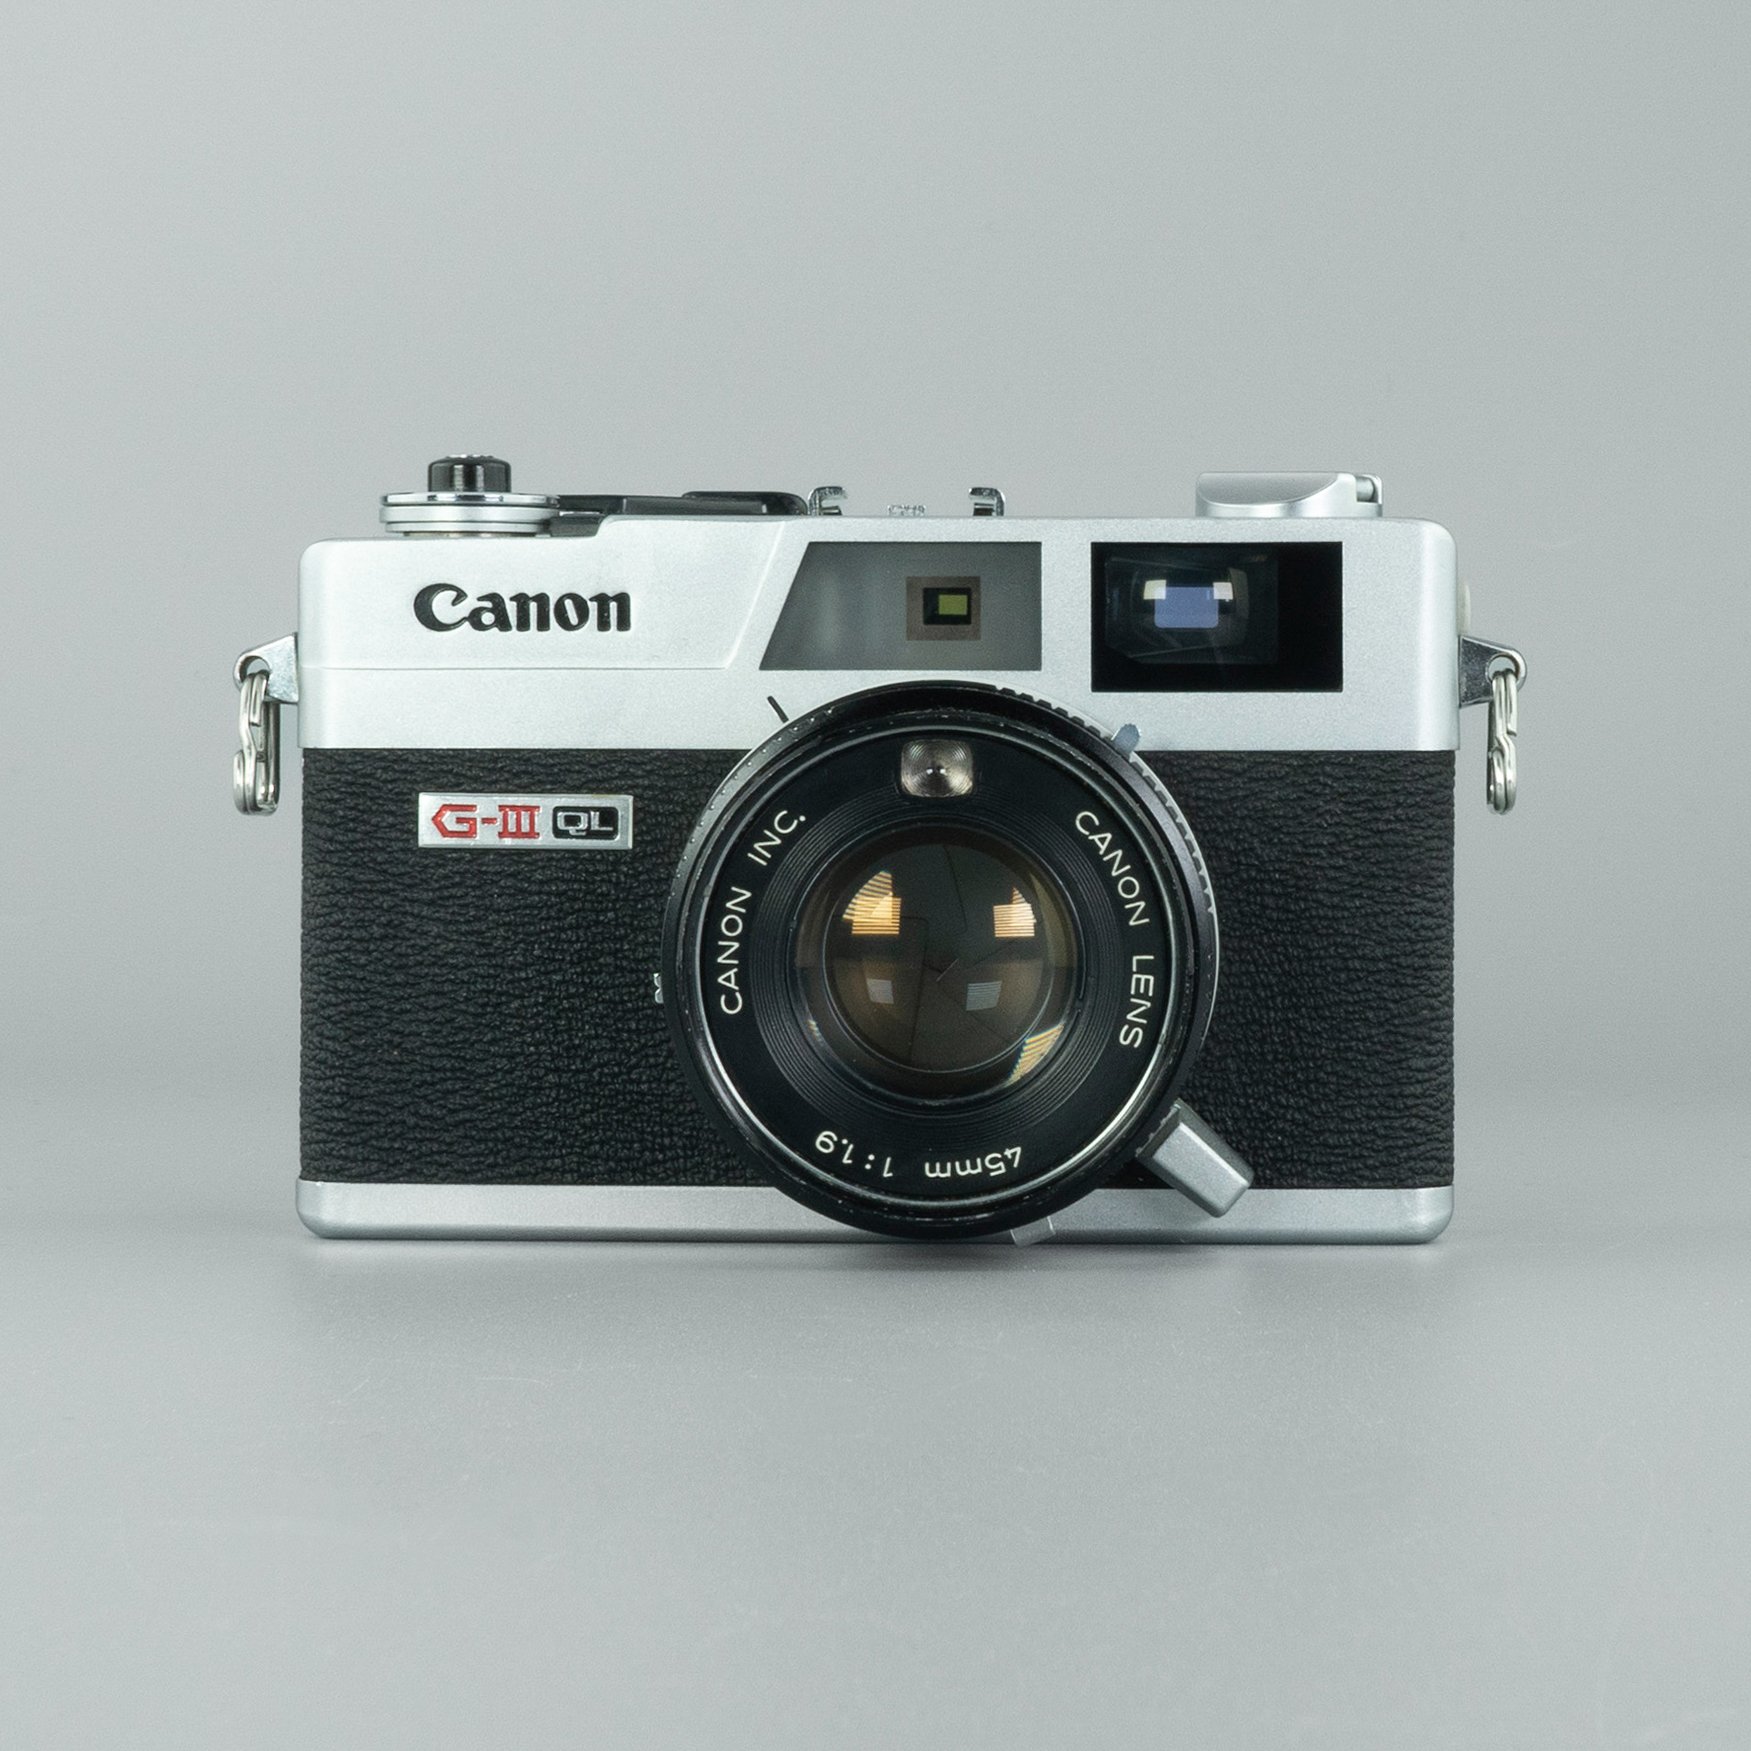 低価格販売  Rangefinder GIII QL19 Canonet Canon 美品 フィルムカメラ